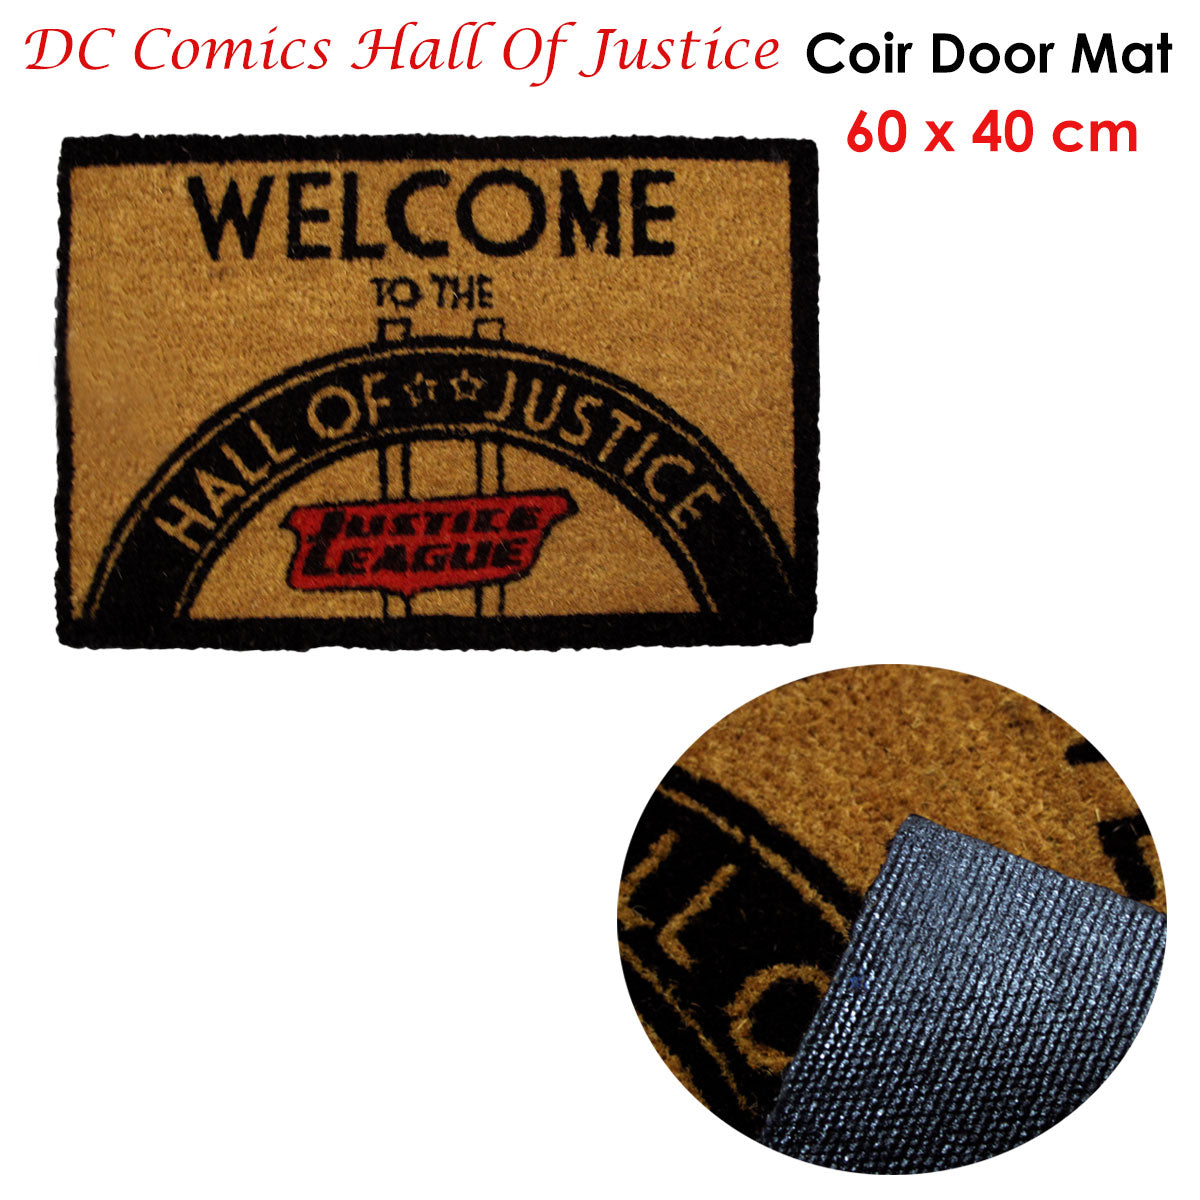 DC Comics Coir Door Mat - Hall Of Justice